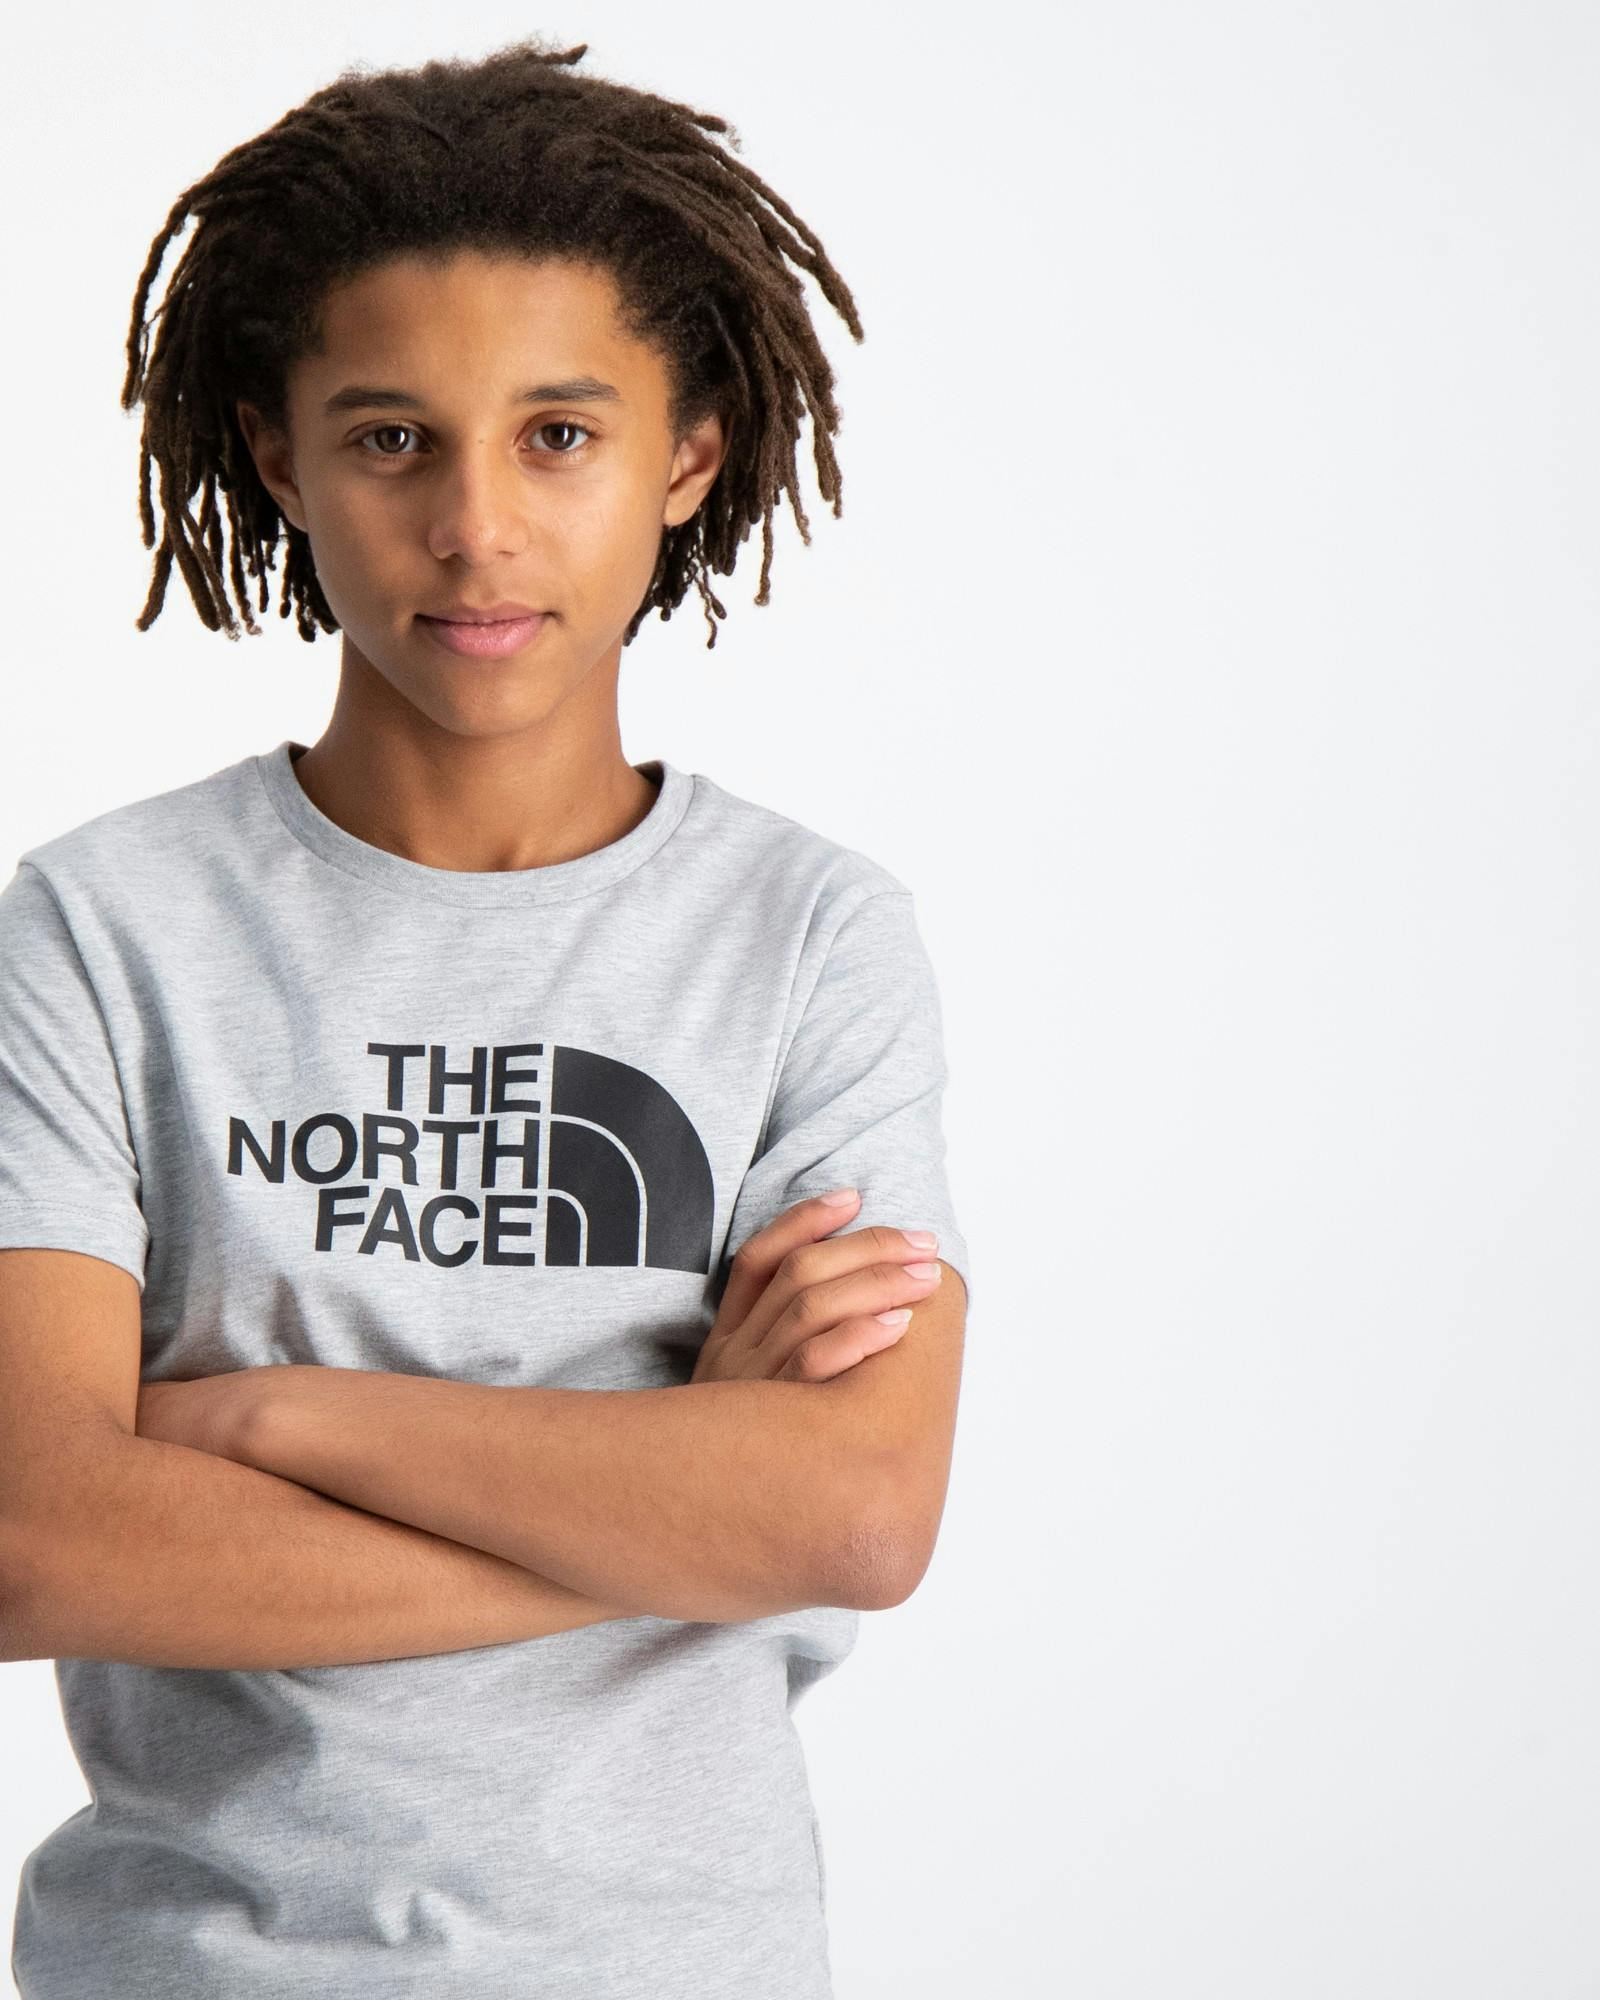 Store Brand Kids Face und North Kinder T-Shirts Jugendliche The für |